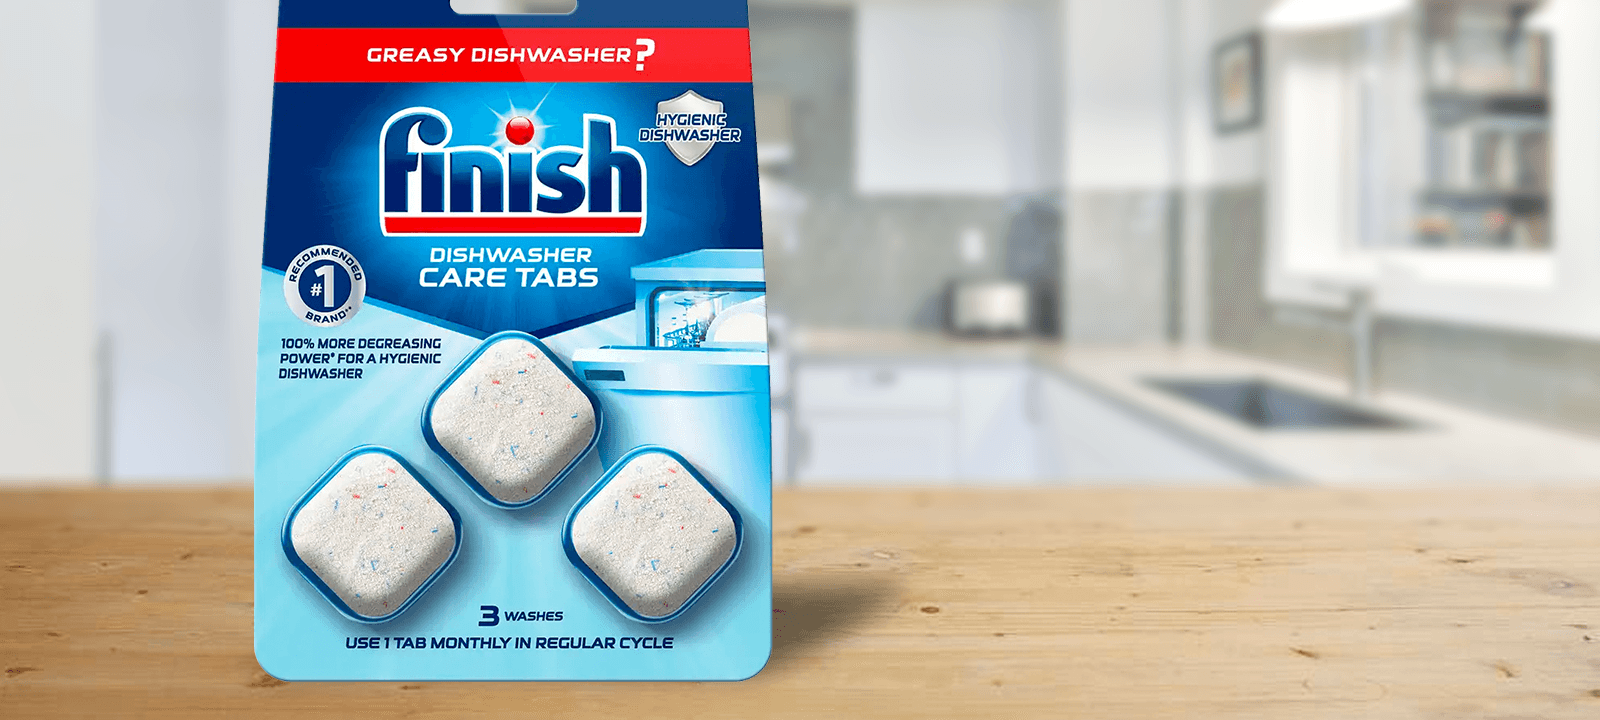 Tablettes nettoyantes Finish pour lave-vaisselle - 12 cycles de lavage